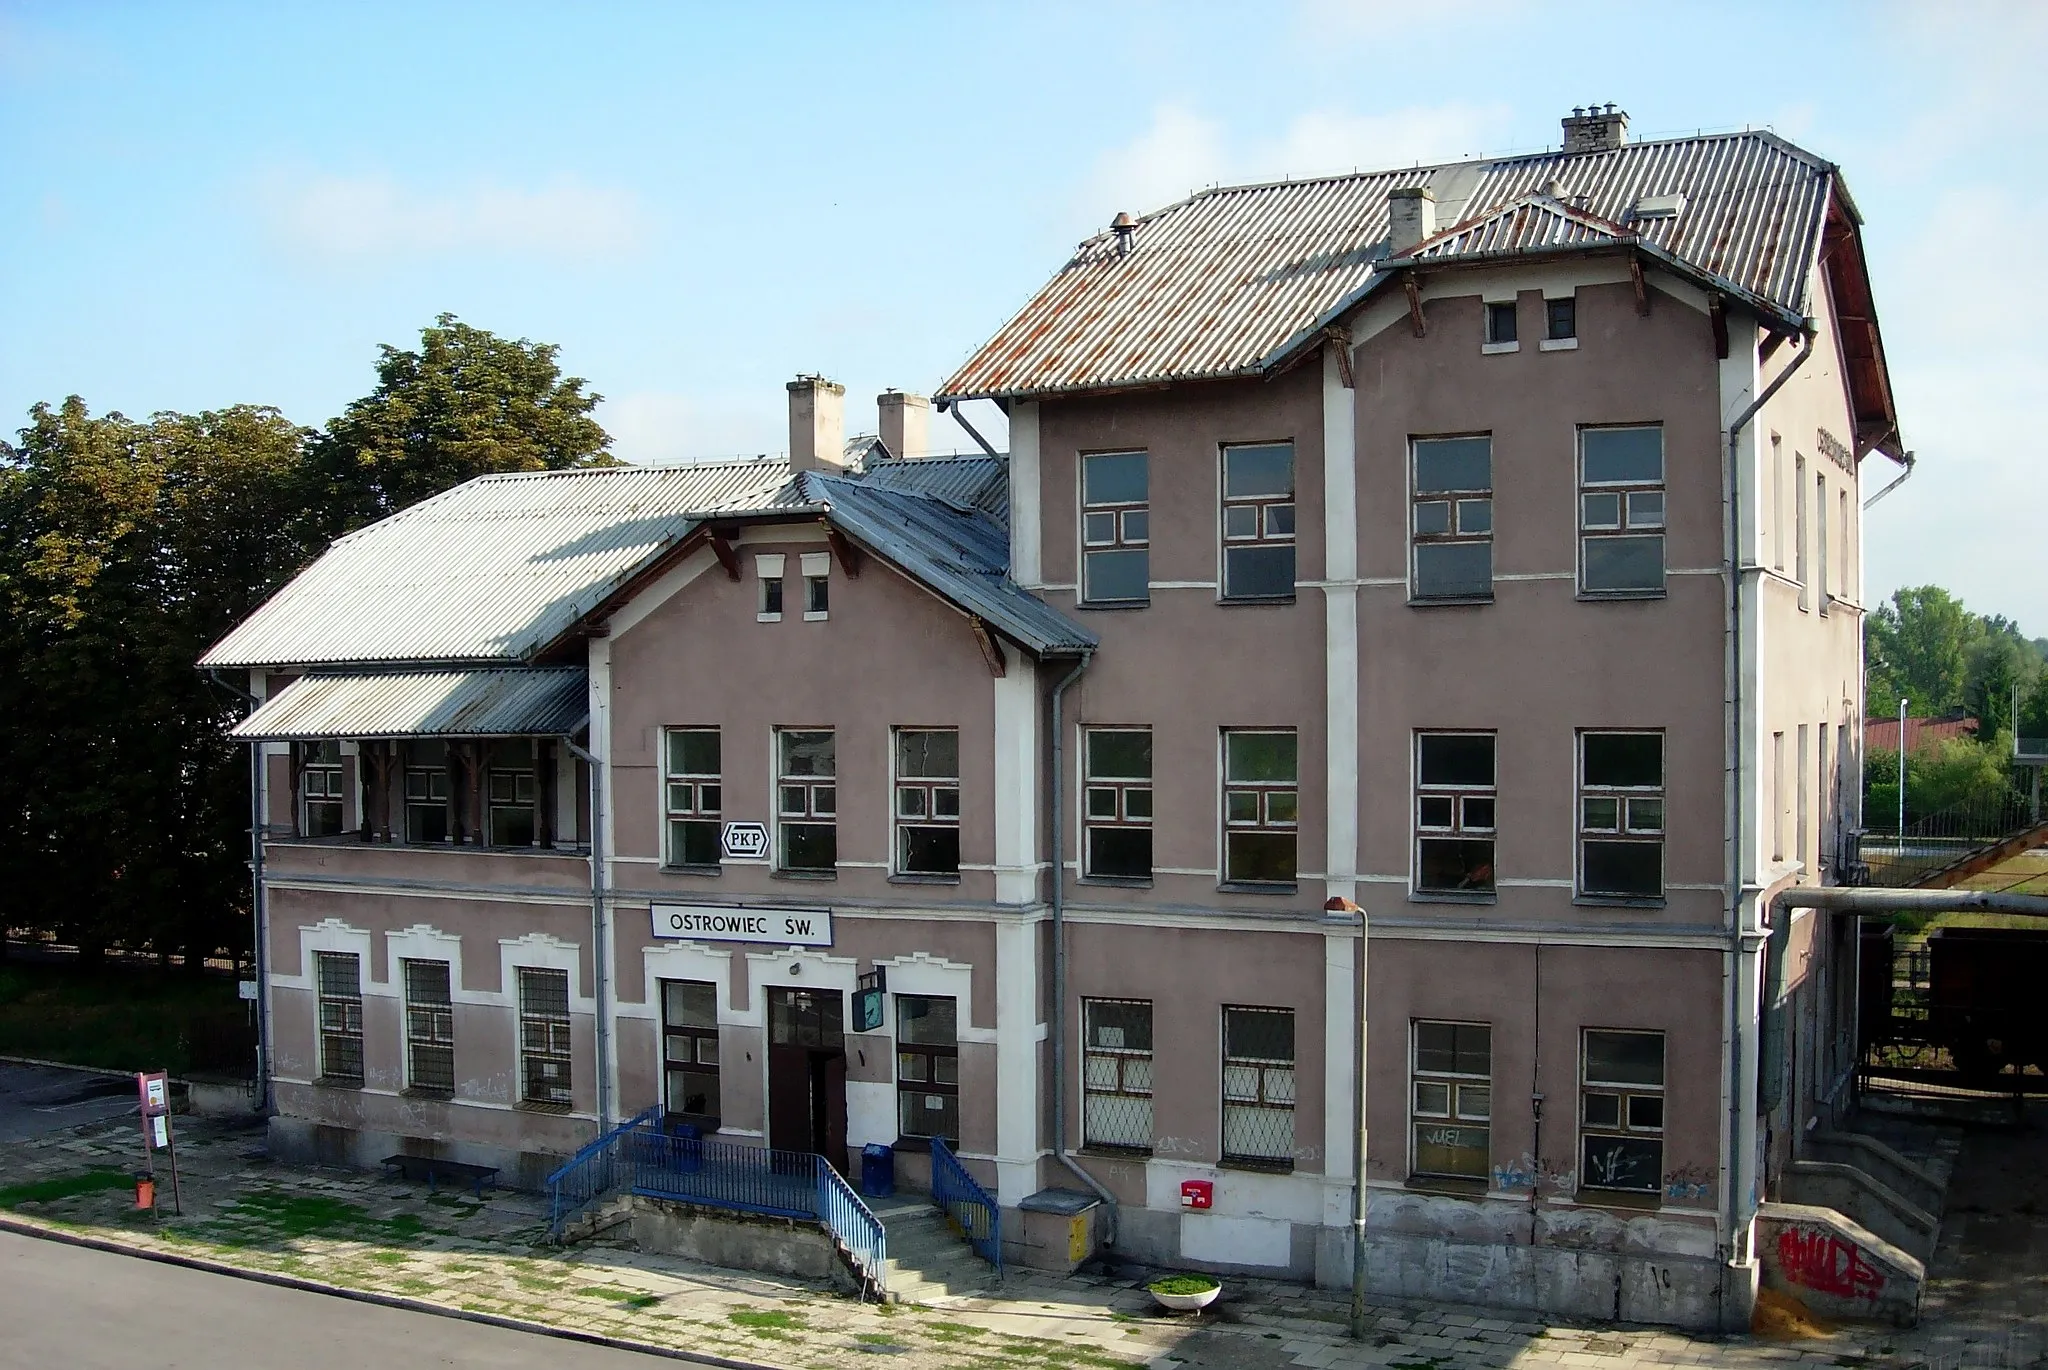 Image of Świętokrzyskie